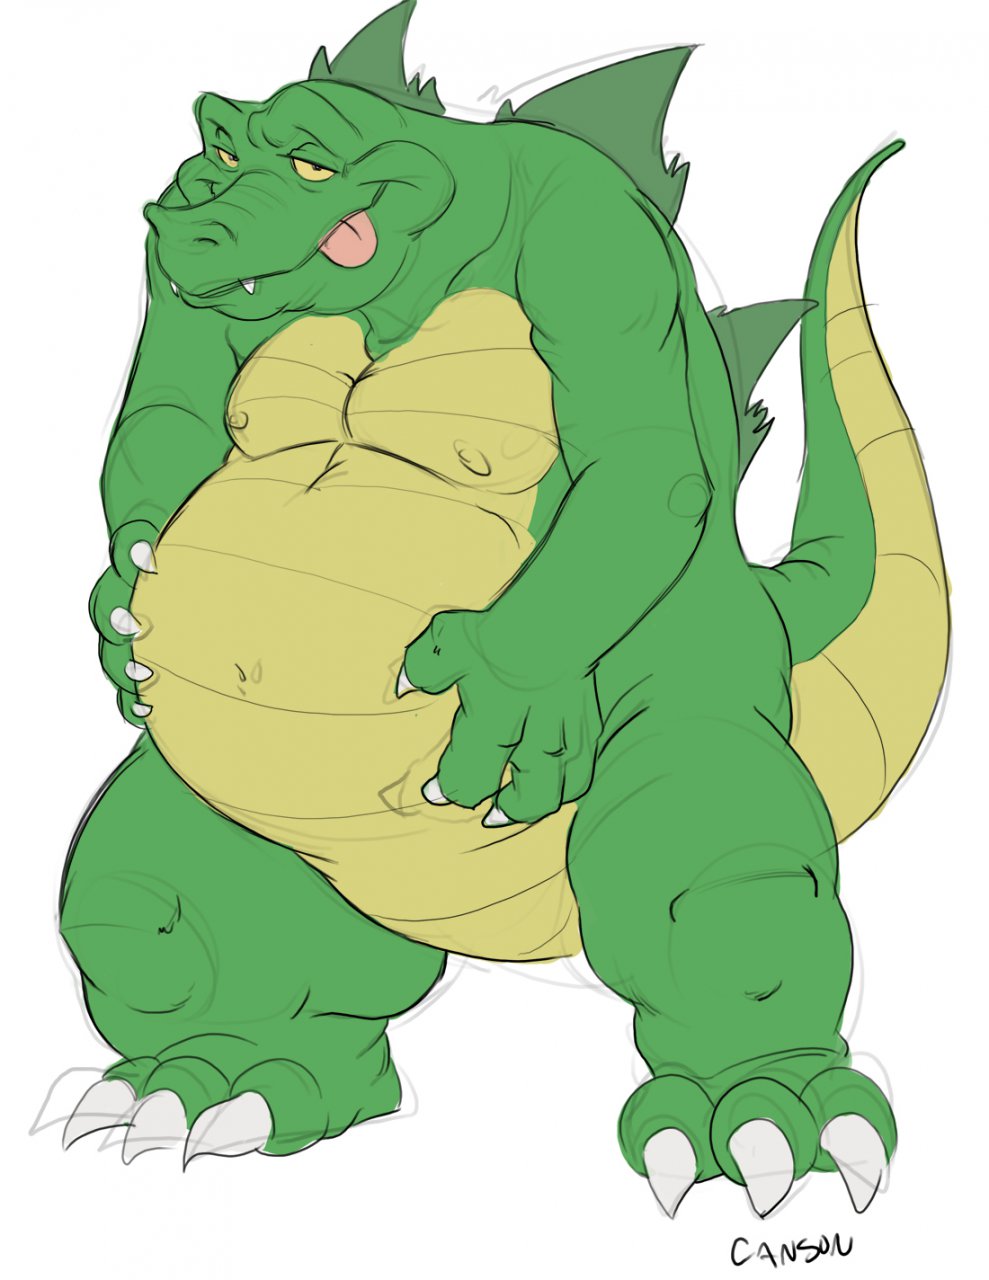 Fat furry Crocodile belly